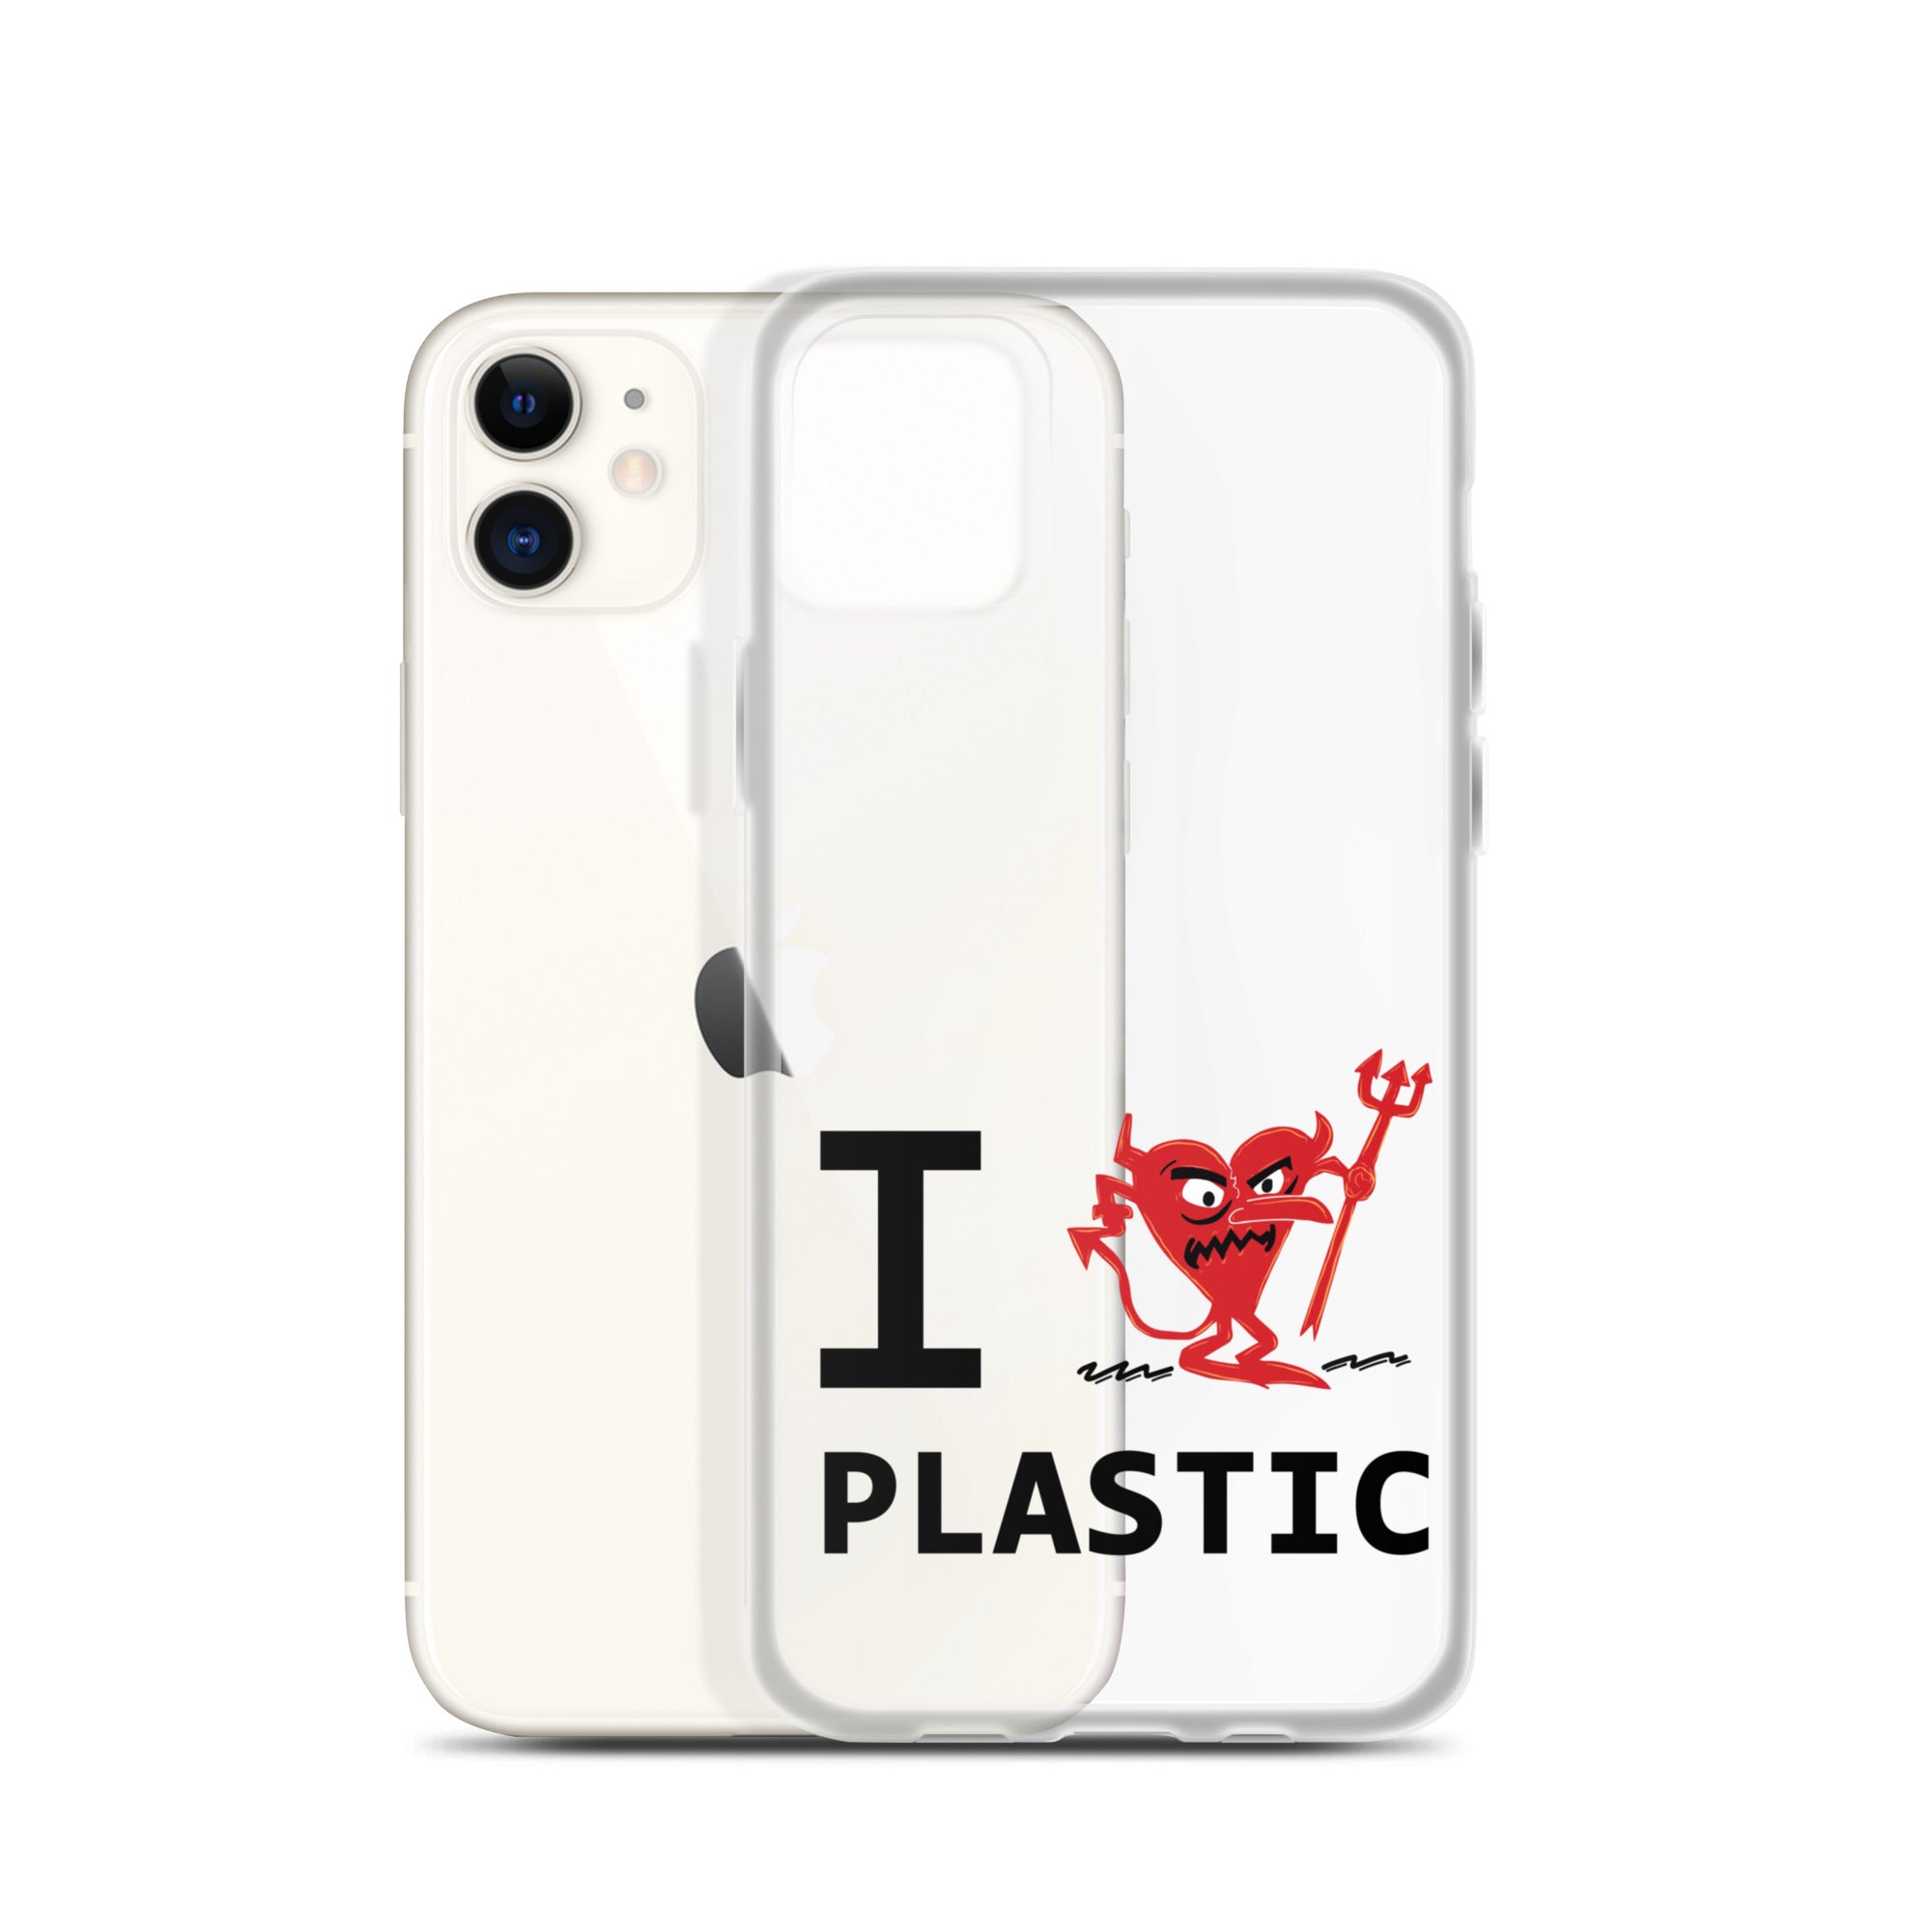 PLASTIC iPhone Case